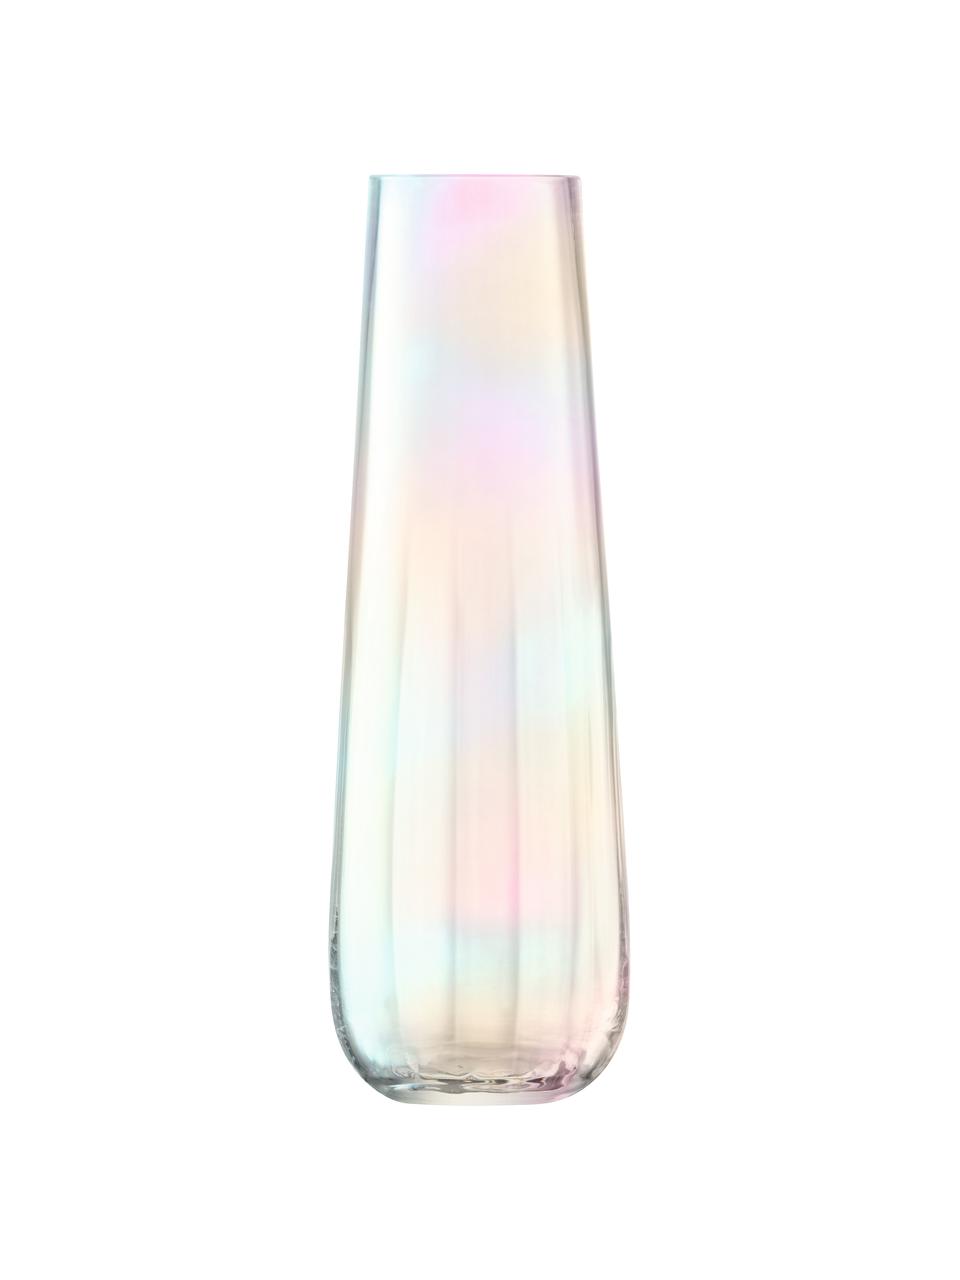 Große mundgeblasene Vase Pearl, Glas, Perlmutt-Schimmer, Ø 13 x H 36 cm